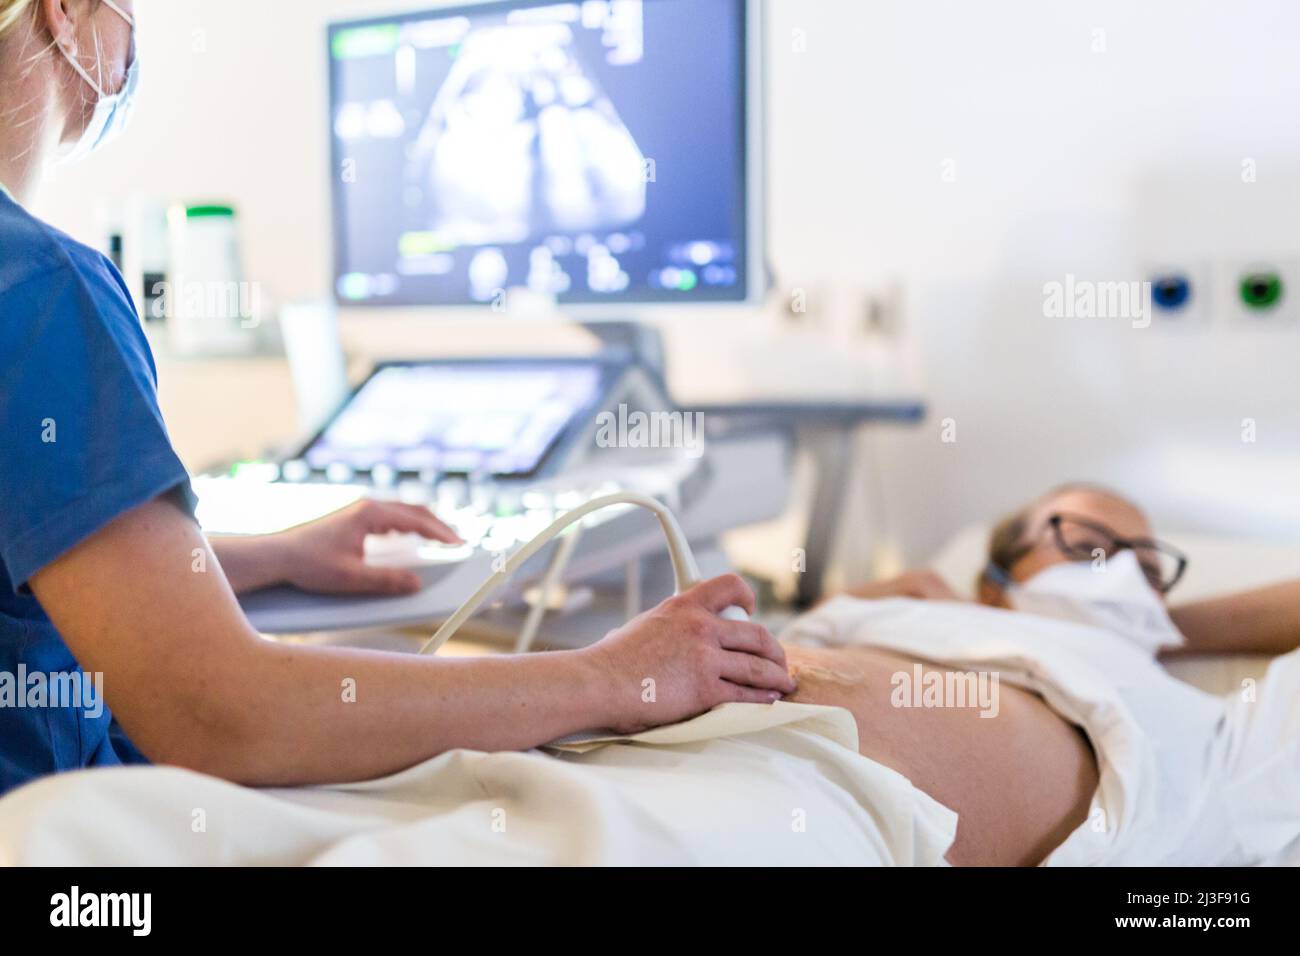 Primer plano de una mujer embarazada que se le realiza una ecografía en la clínica médica. Concepto de salud y medicina Foto de stock